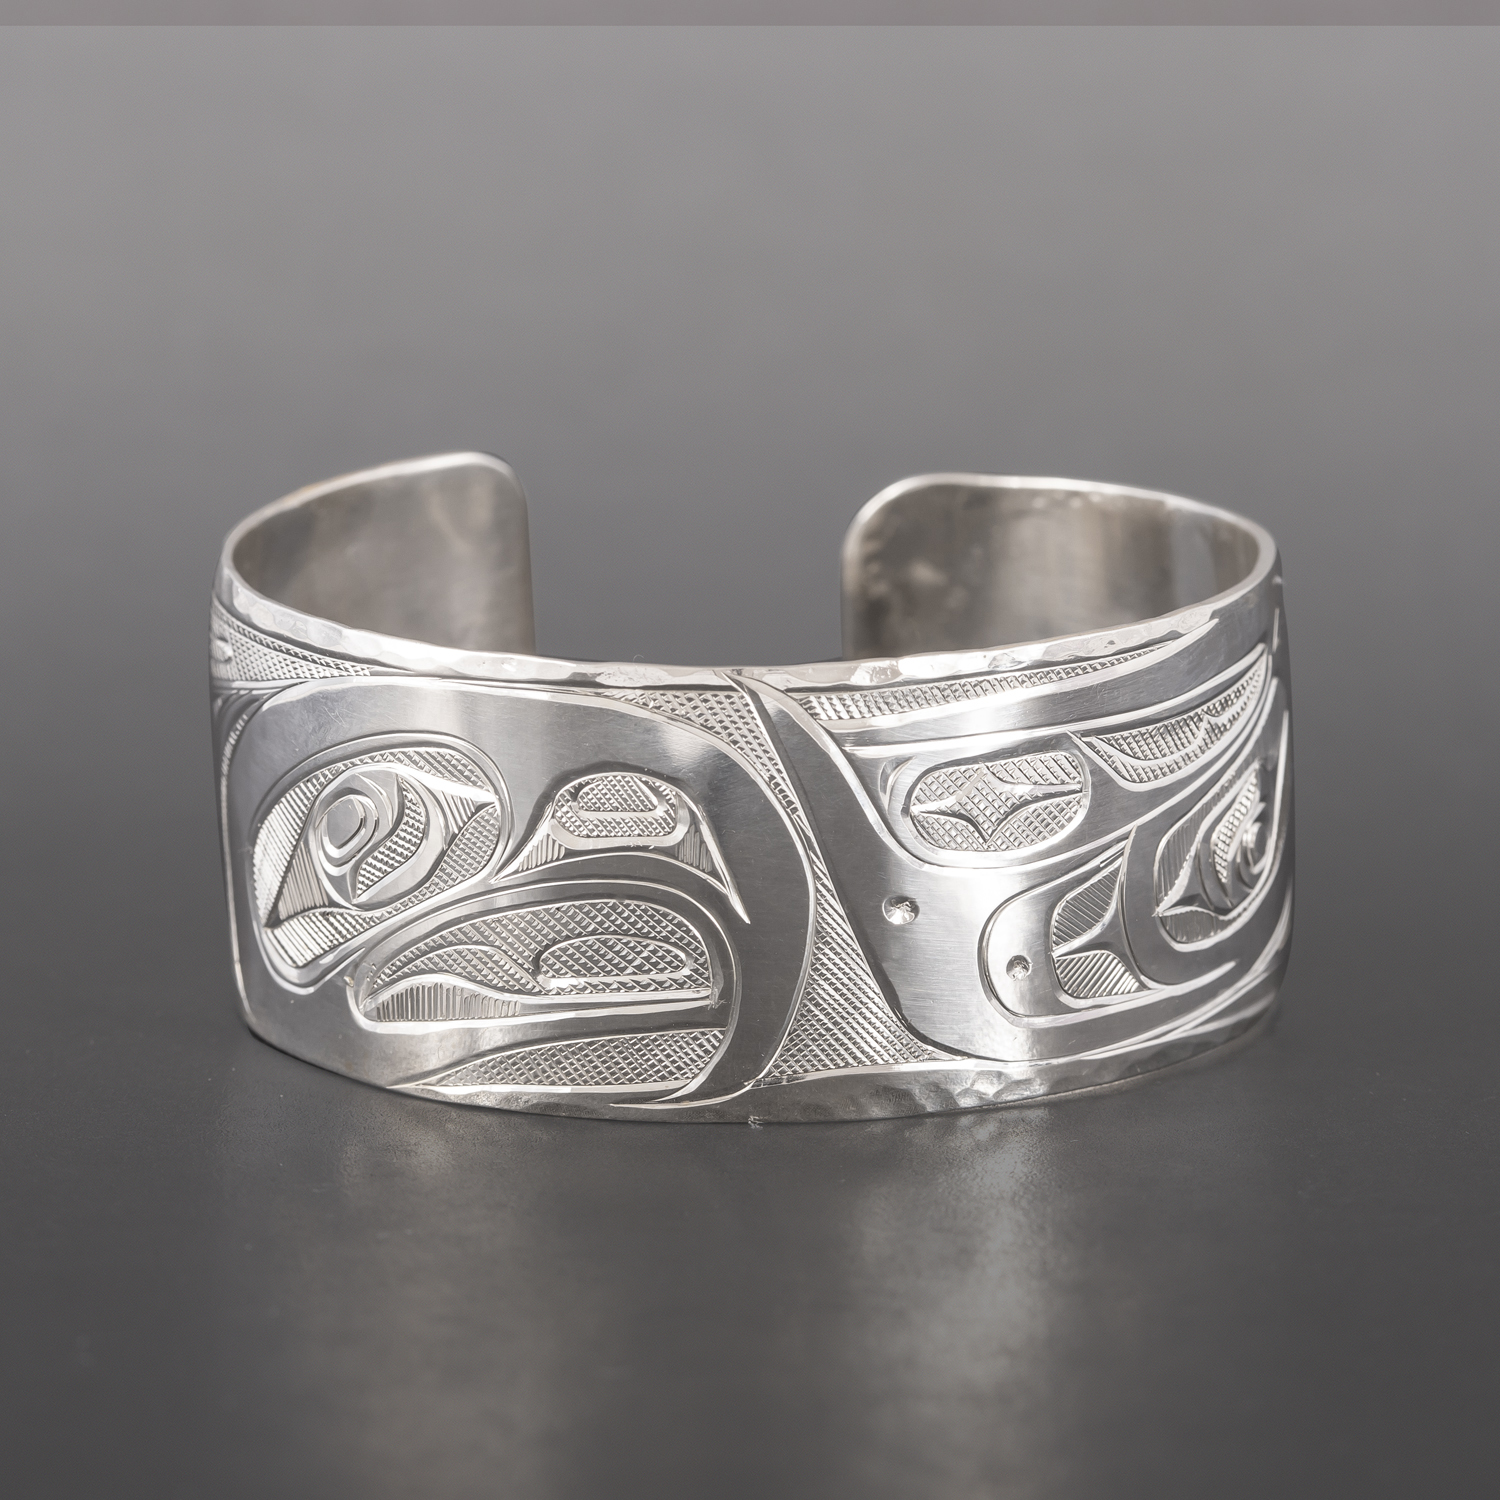 Lovebirds Bracelet
Corrine Hunt
Kwakwaka'wakw/Tlingit
Silver
$600